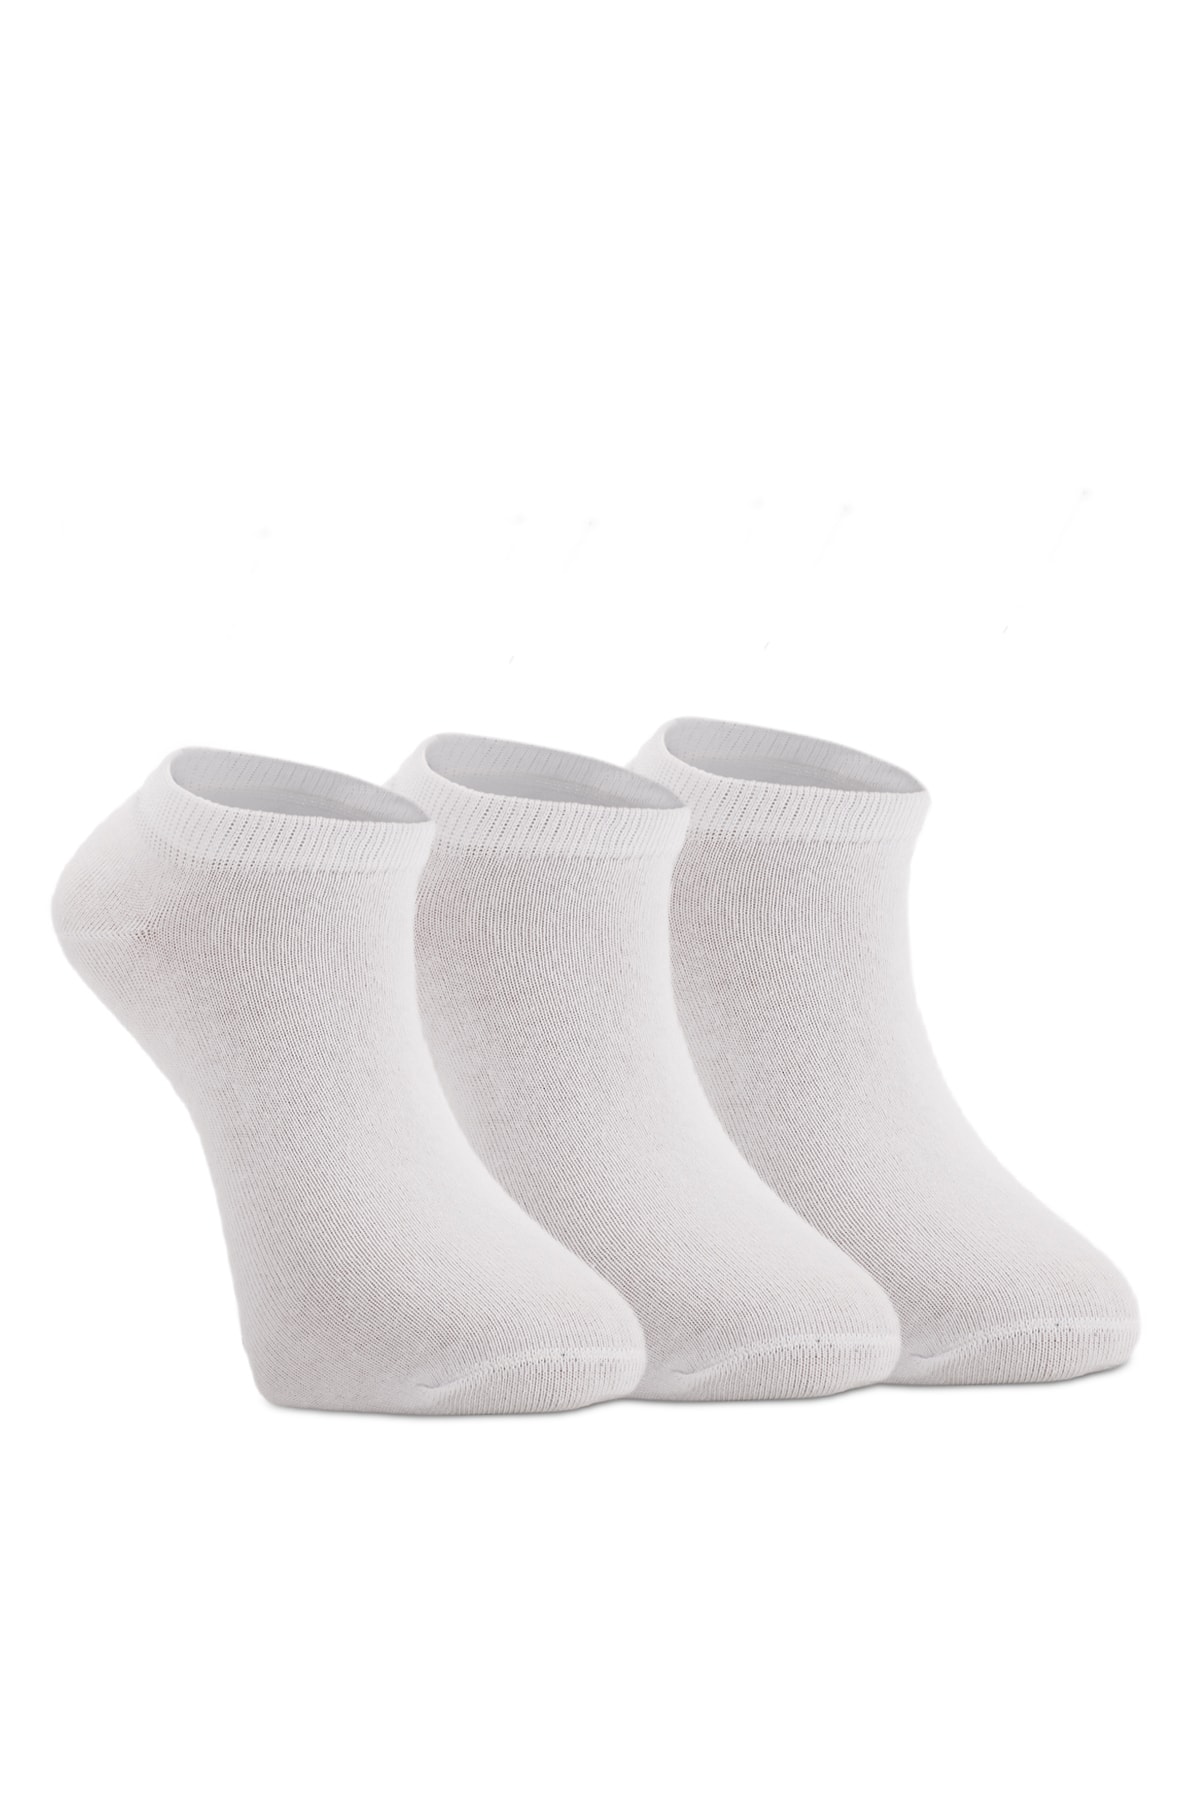 Slazenger Jaime Men's Socks White